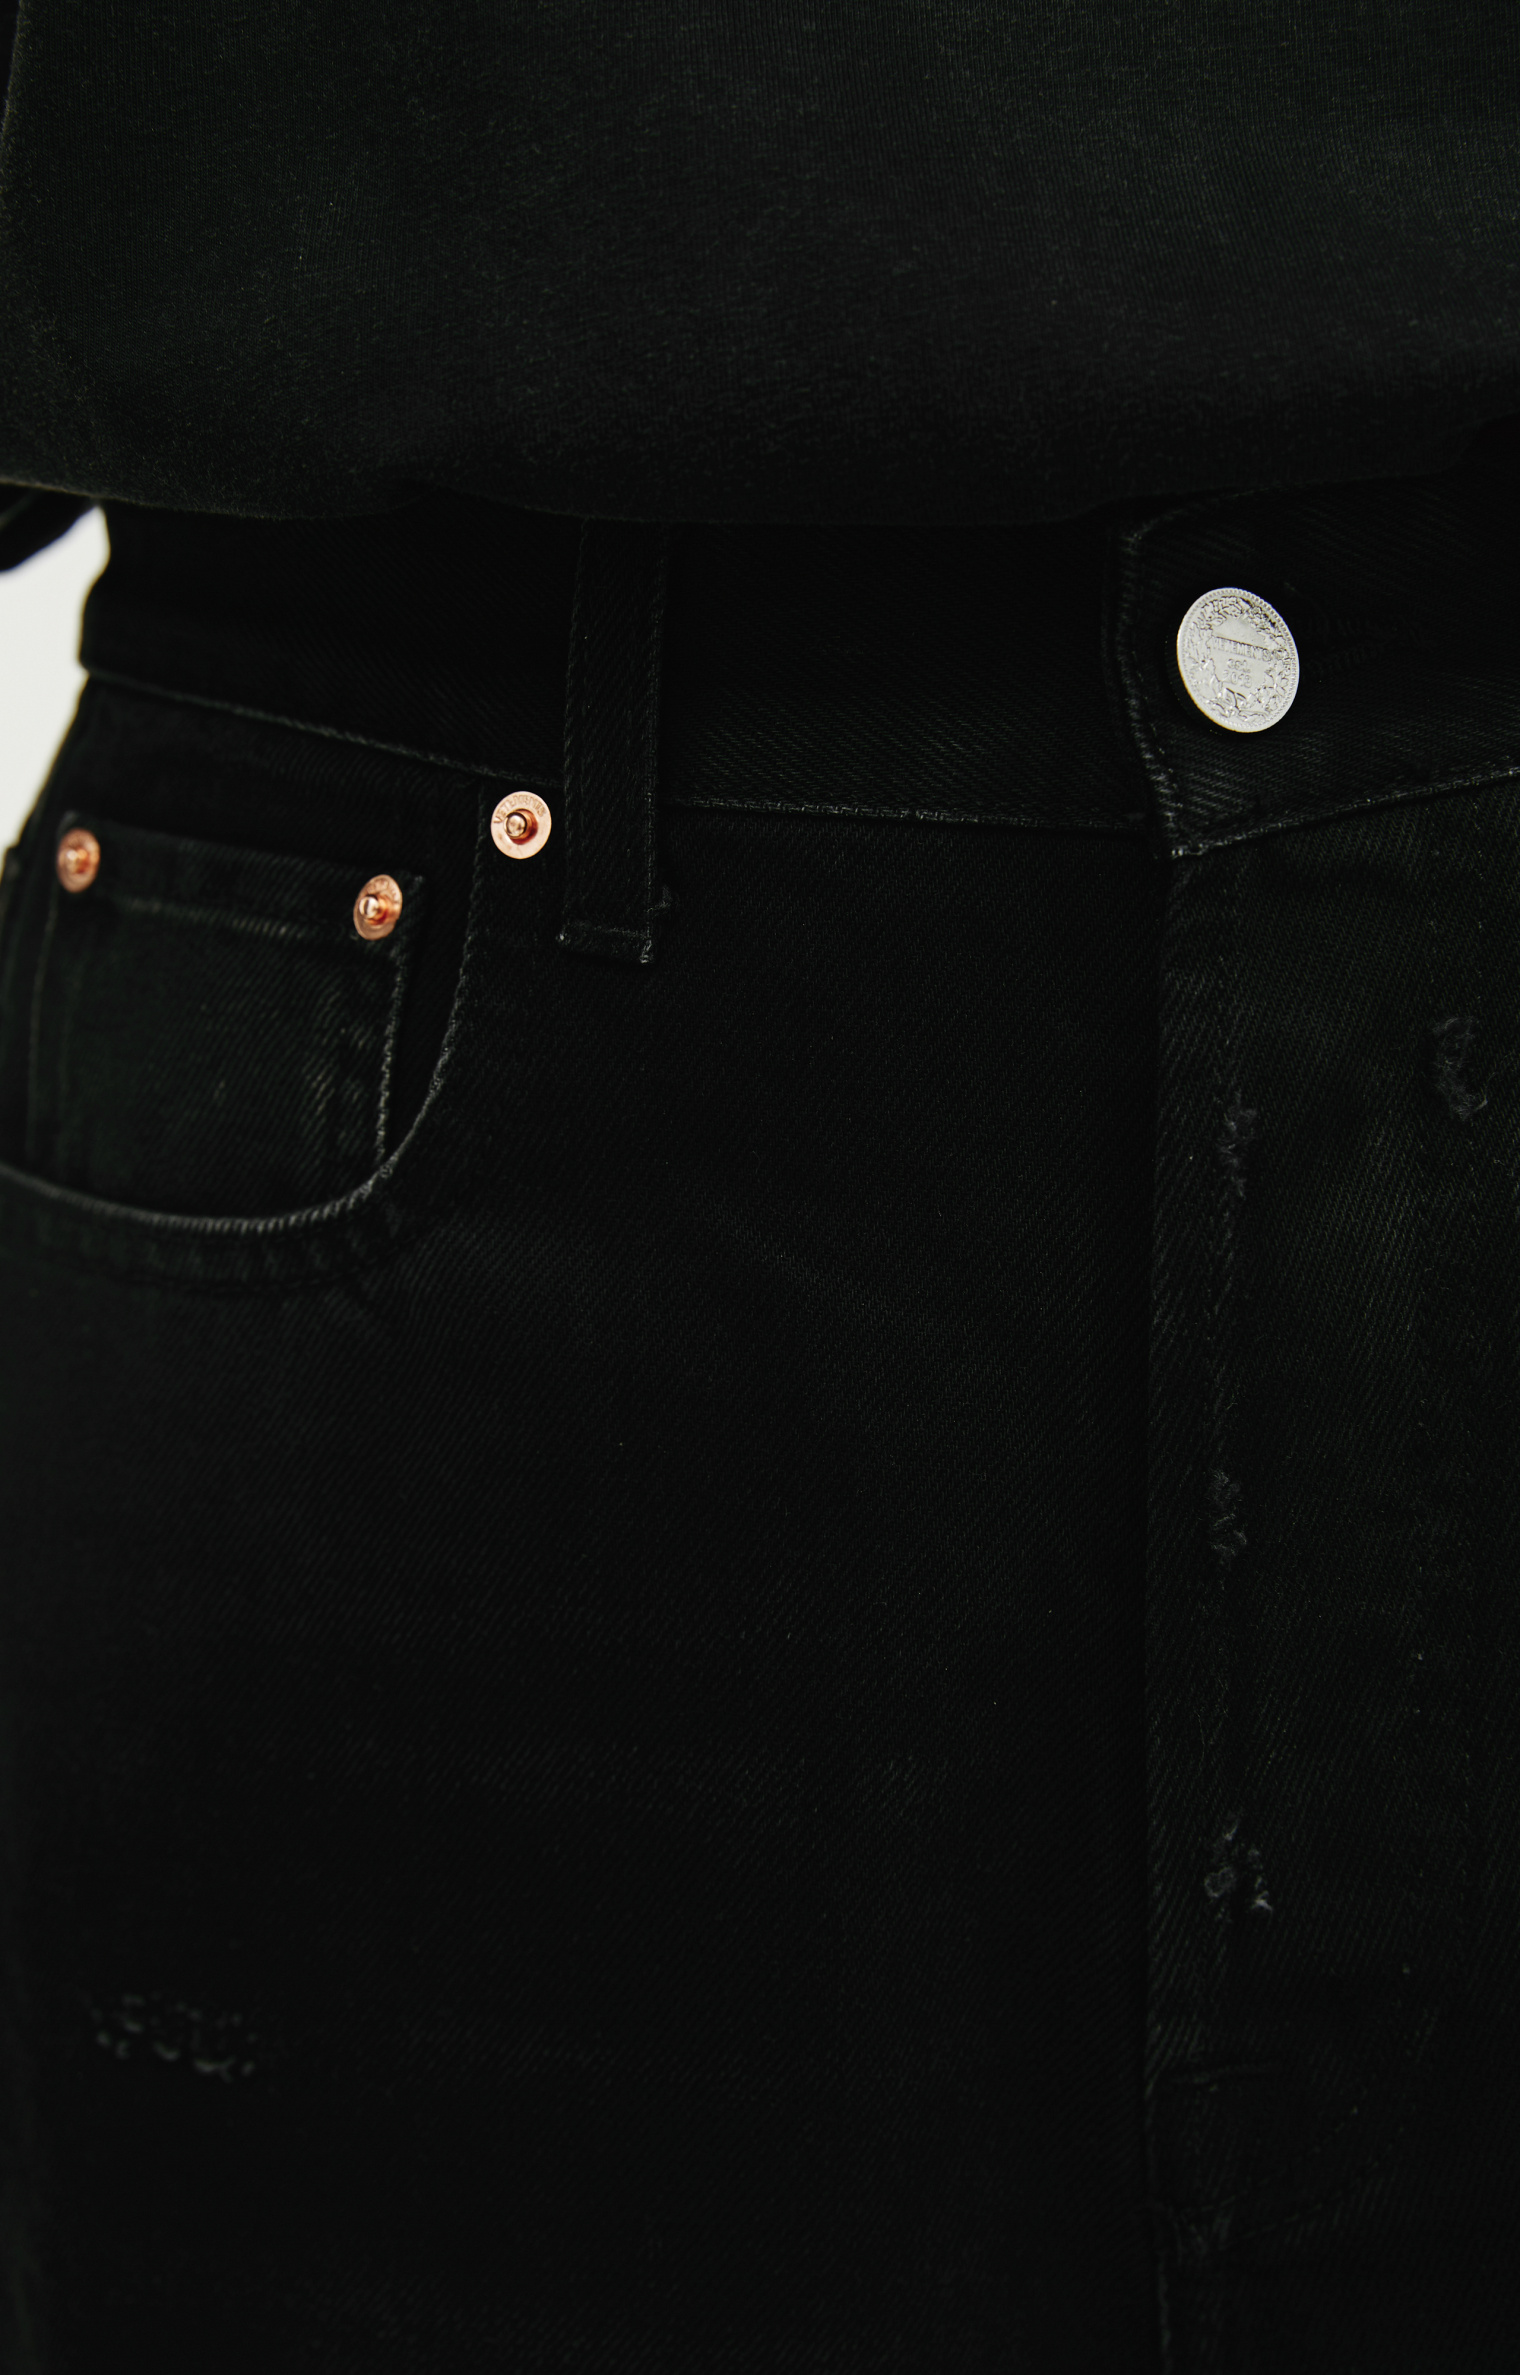 VETEMENTS Черные широкие джинсы